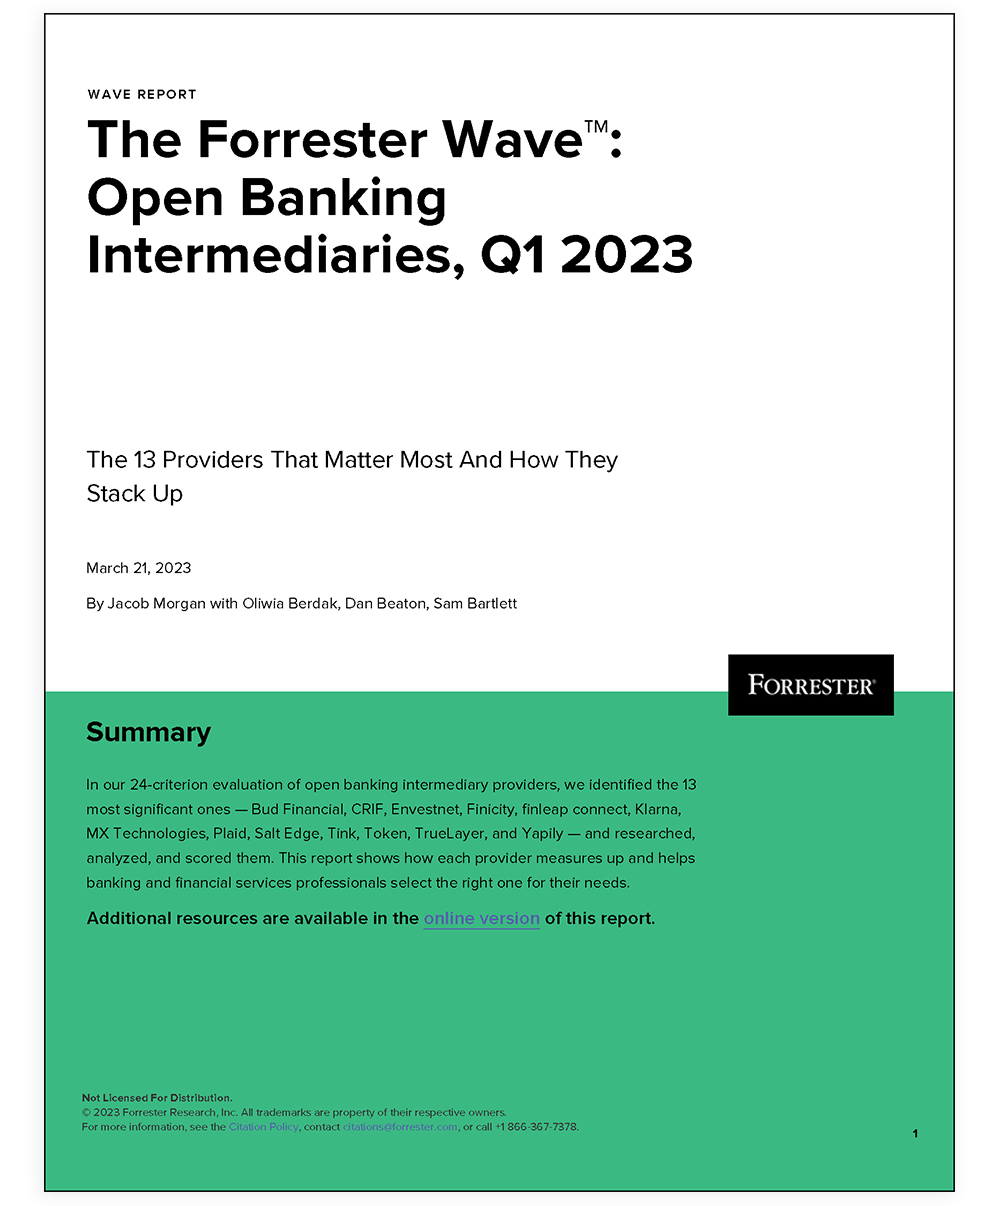 Forrester Wave Report 